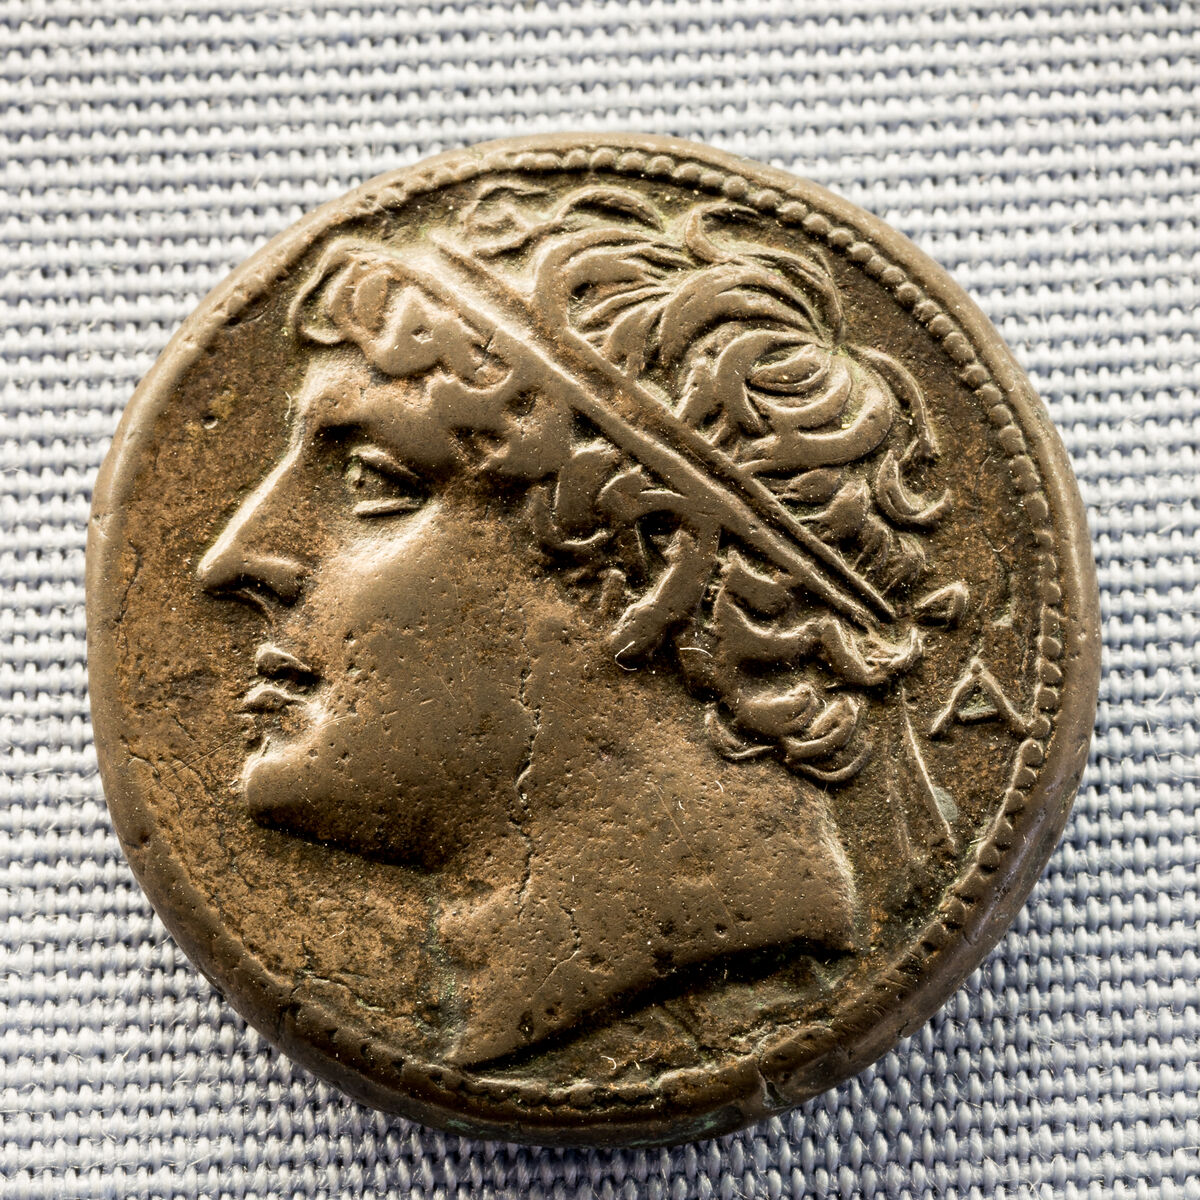 GFD 1/124: Münze mit Abbild von König Hieron II. von Syrakus, 3. Jahrhundert v. Chr.